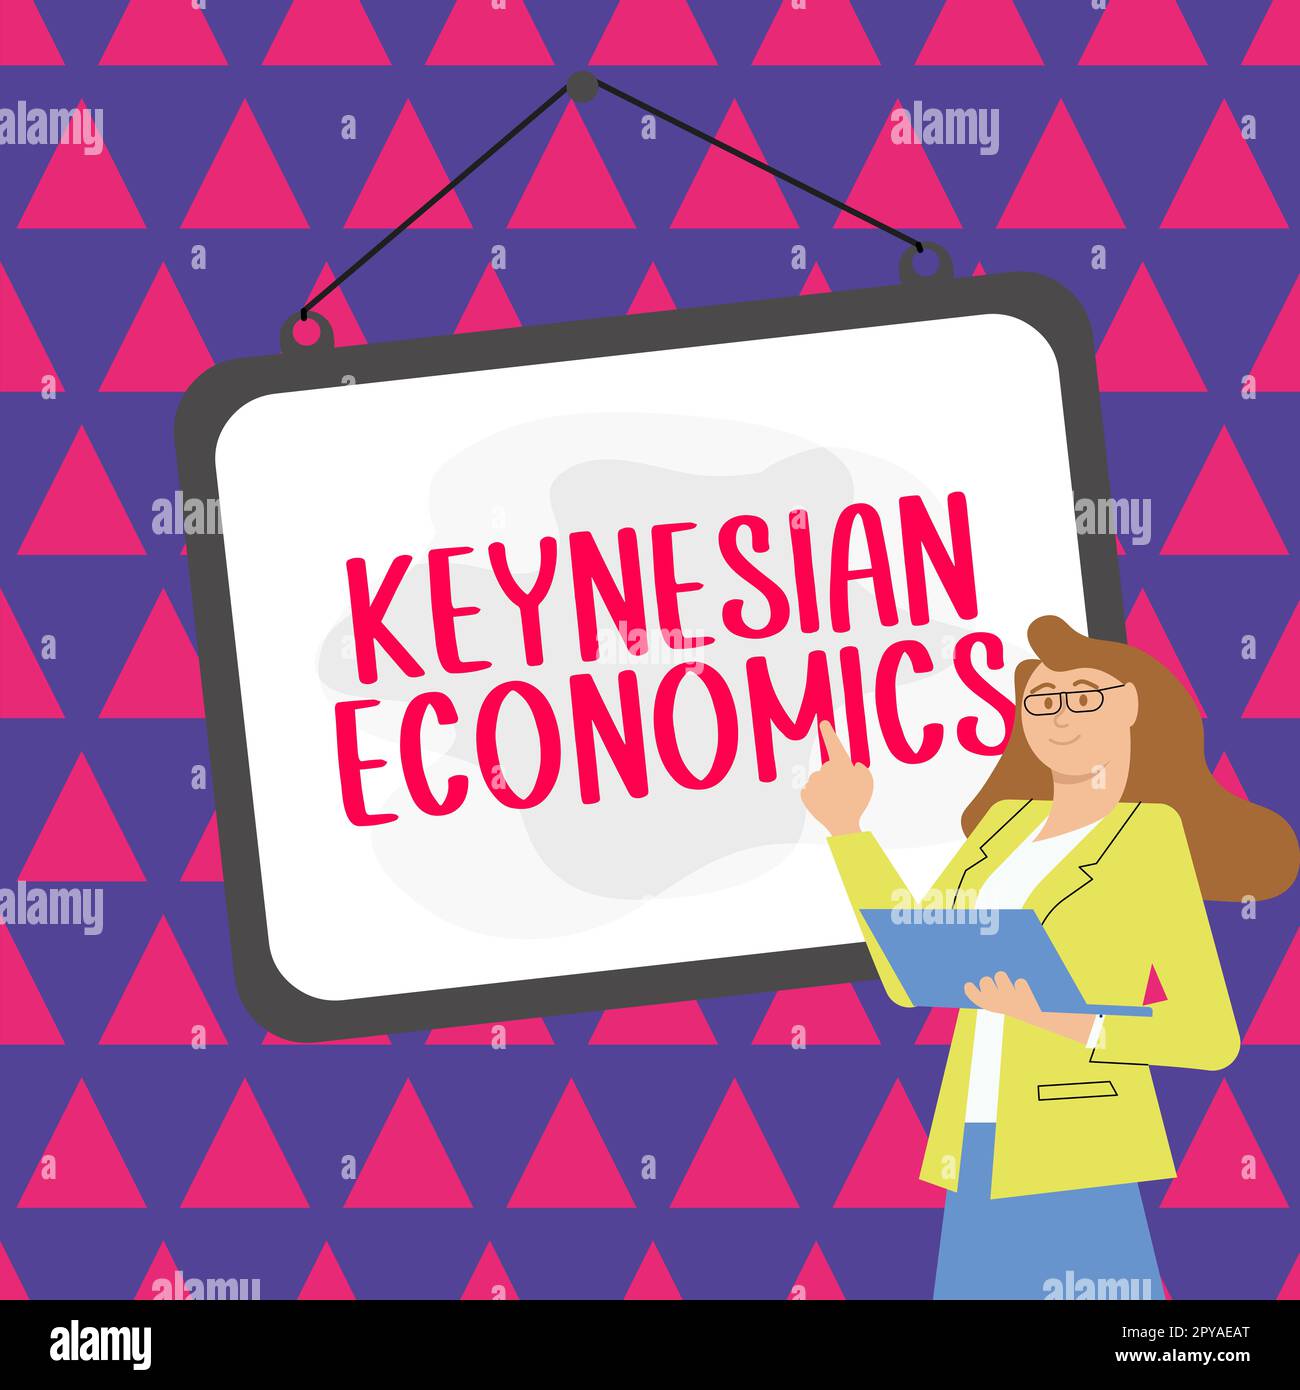 Symbole textuel montrant l'économie keynésienne. Mot écrit sur les programmes monétaires et fiscaux par le gouvernement pour augmenter l'emploi Banque D'Images